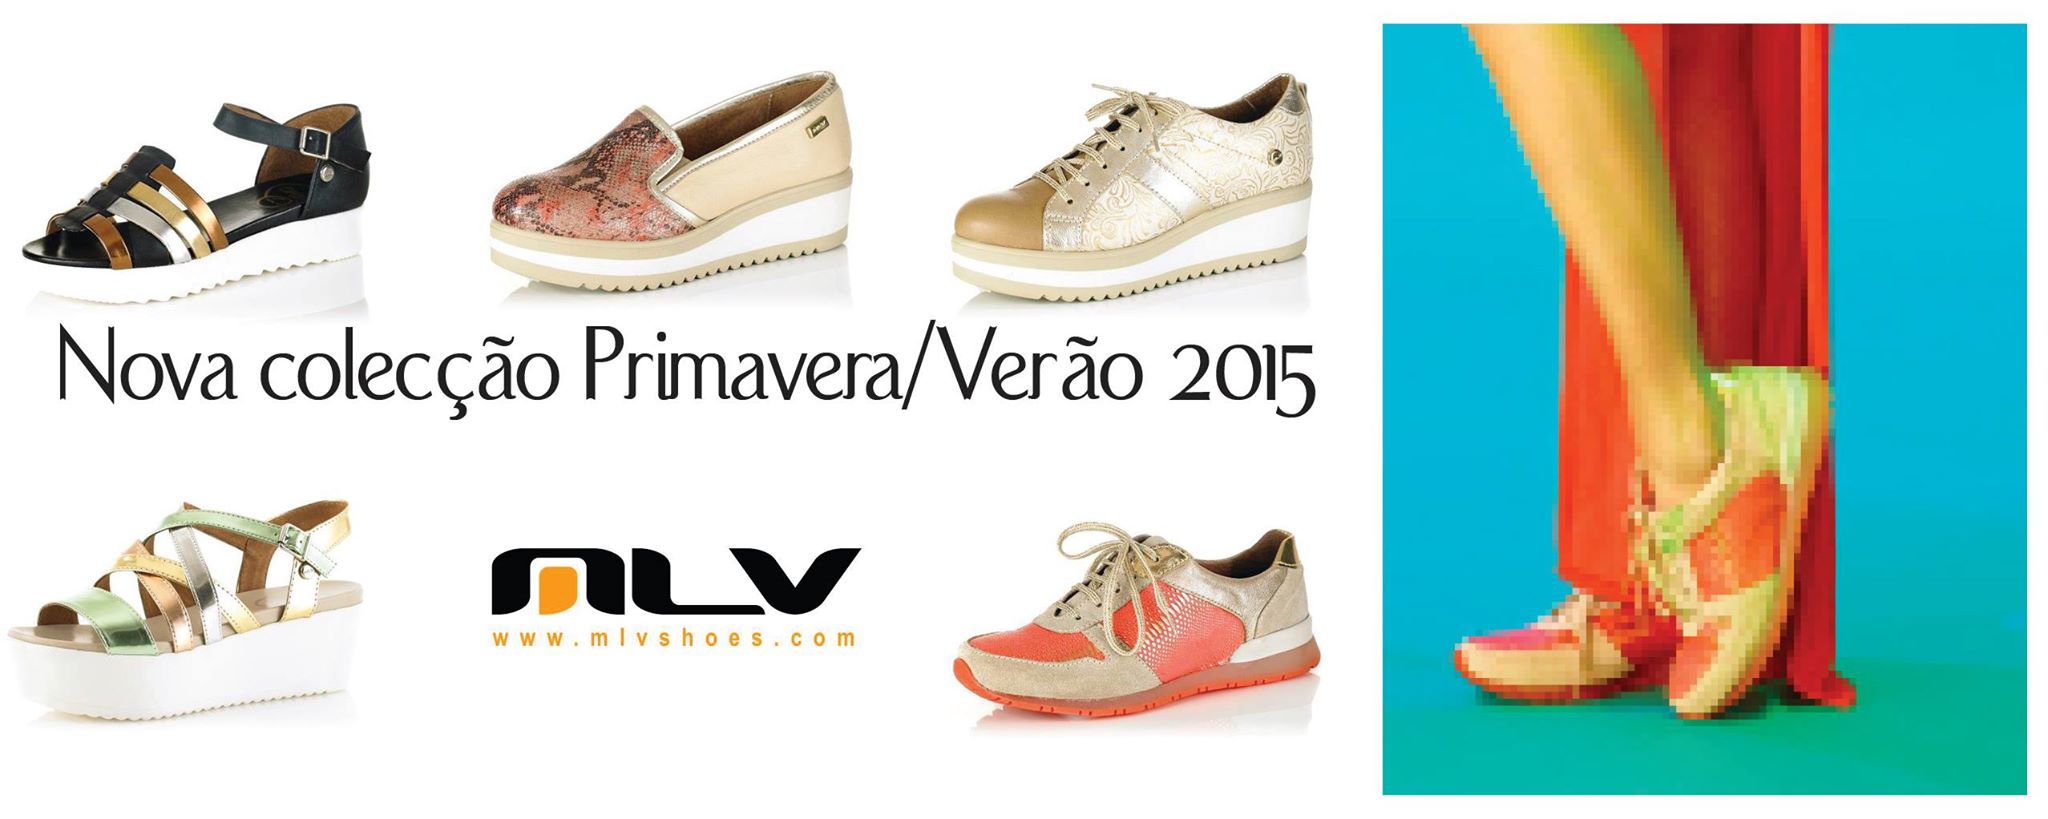 sapatilhas-coleccao-primavera-verao-2015-mlv-shoes